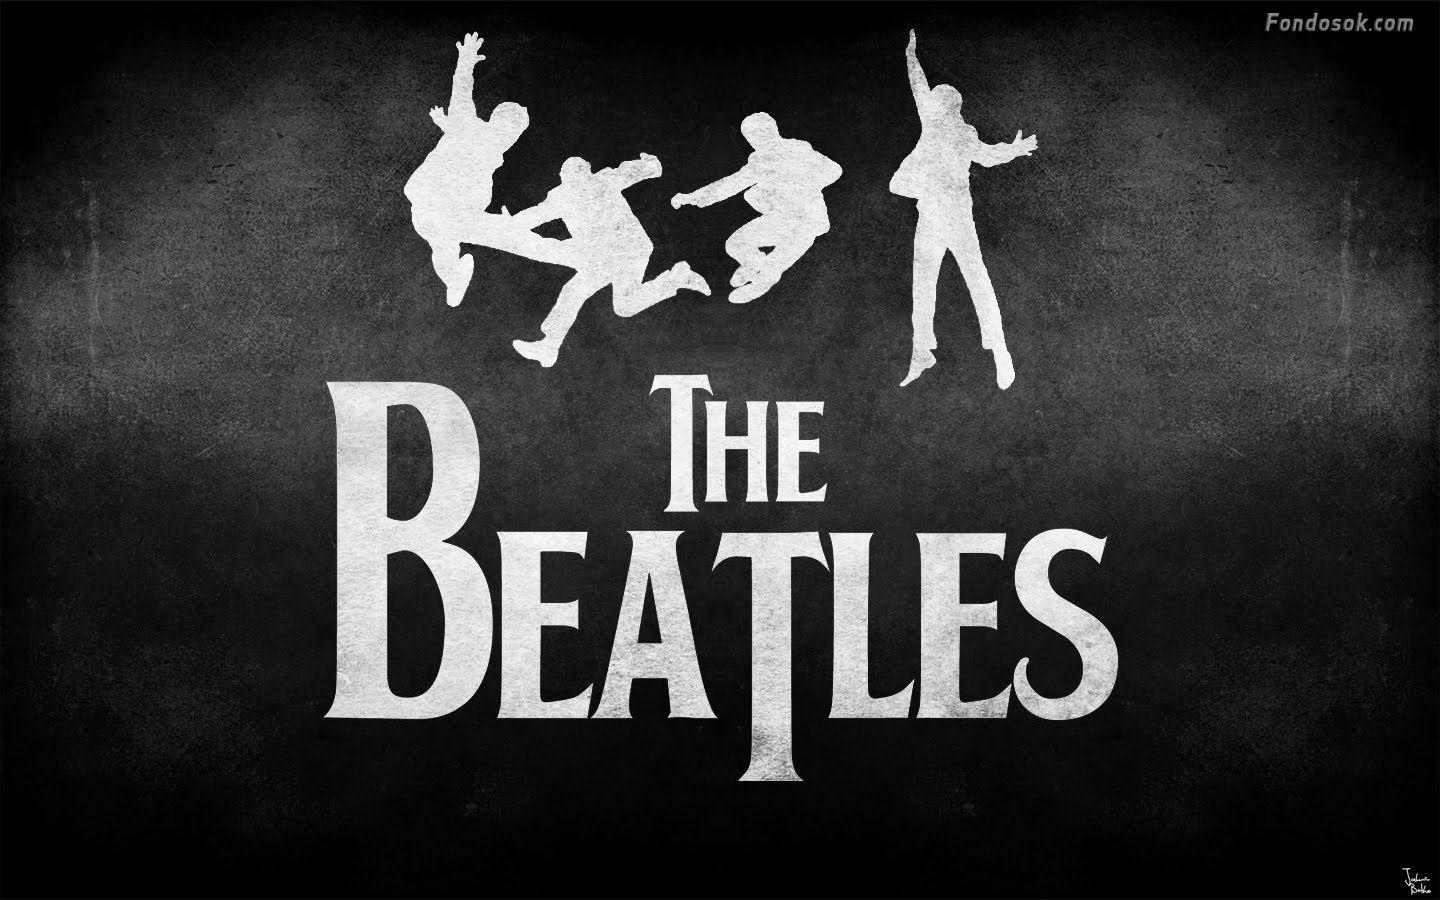 The Beatles Running HD desktop wallpaper High Definition. HD